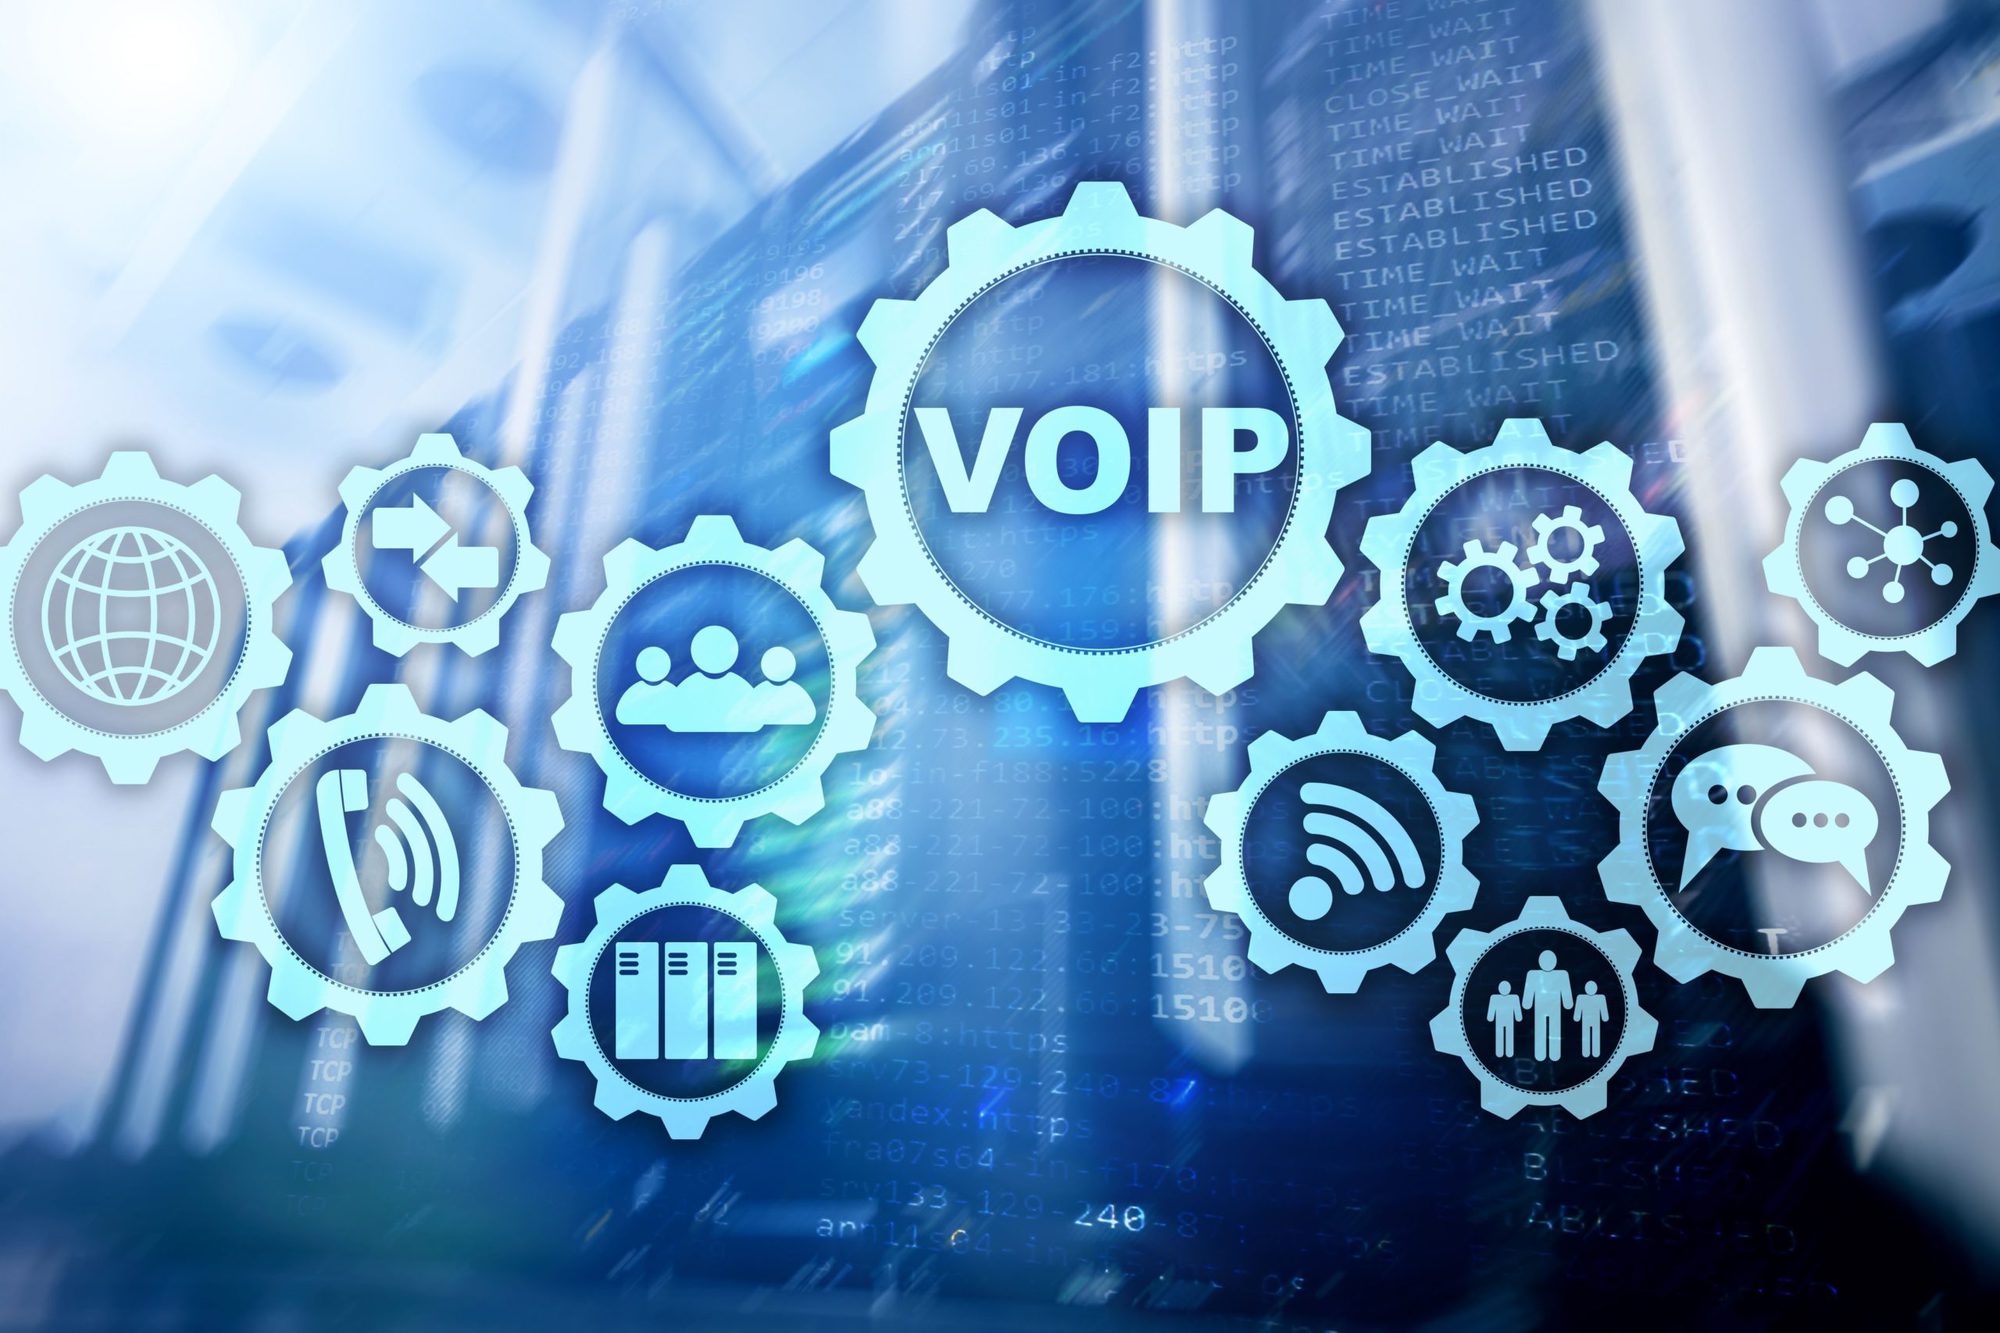 Công nghệ NW mang đến cho bạn phần mềm VoIP doanh nghiệp chất lượng cao! Sử dụng phần mềm này để truyền tải chất lượng âm thanh và hình ảnh trong cuộc gọi và tận hưởng những tính năng thông minh giúp tiết kiệm thời gian công việc cho doanh nghiệp của bạn. 